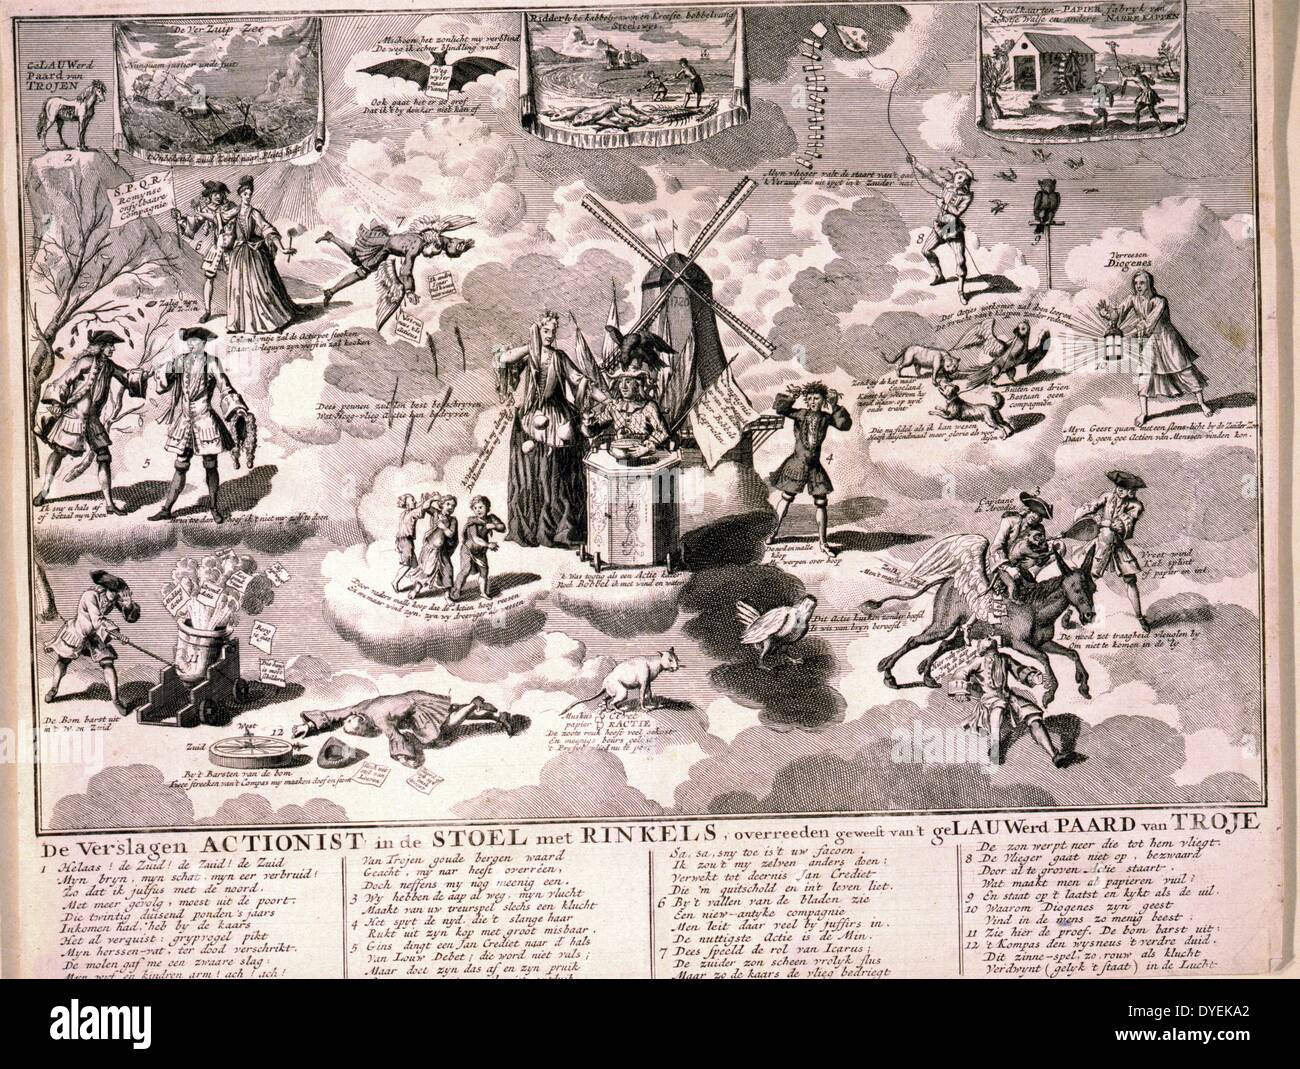 De verslagen Aktionistischen in de stoel met rinkels, overreeden geweest van't geLauwerd Paard van Troje, 1720. graviert Satire auf die South Sea Company und andere bubble Pläne von 1720 in einer Sammlung niederländischer Satiren auf dem Schema. Gravur. Stockfoto